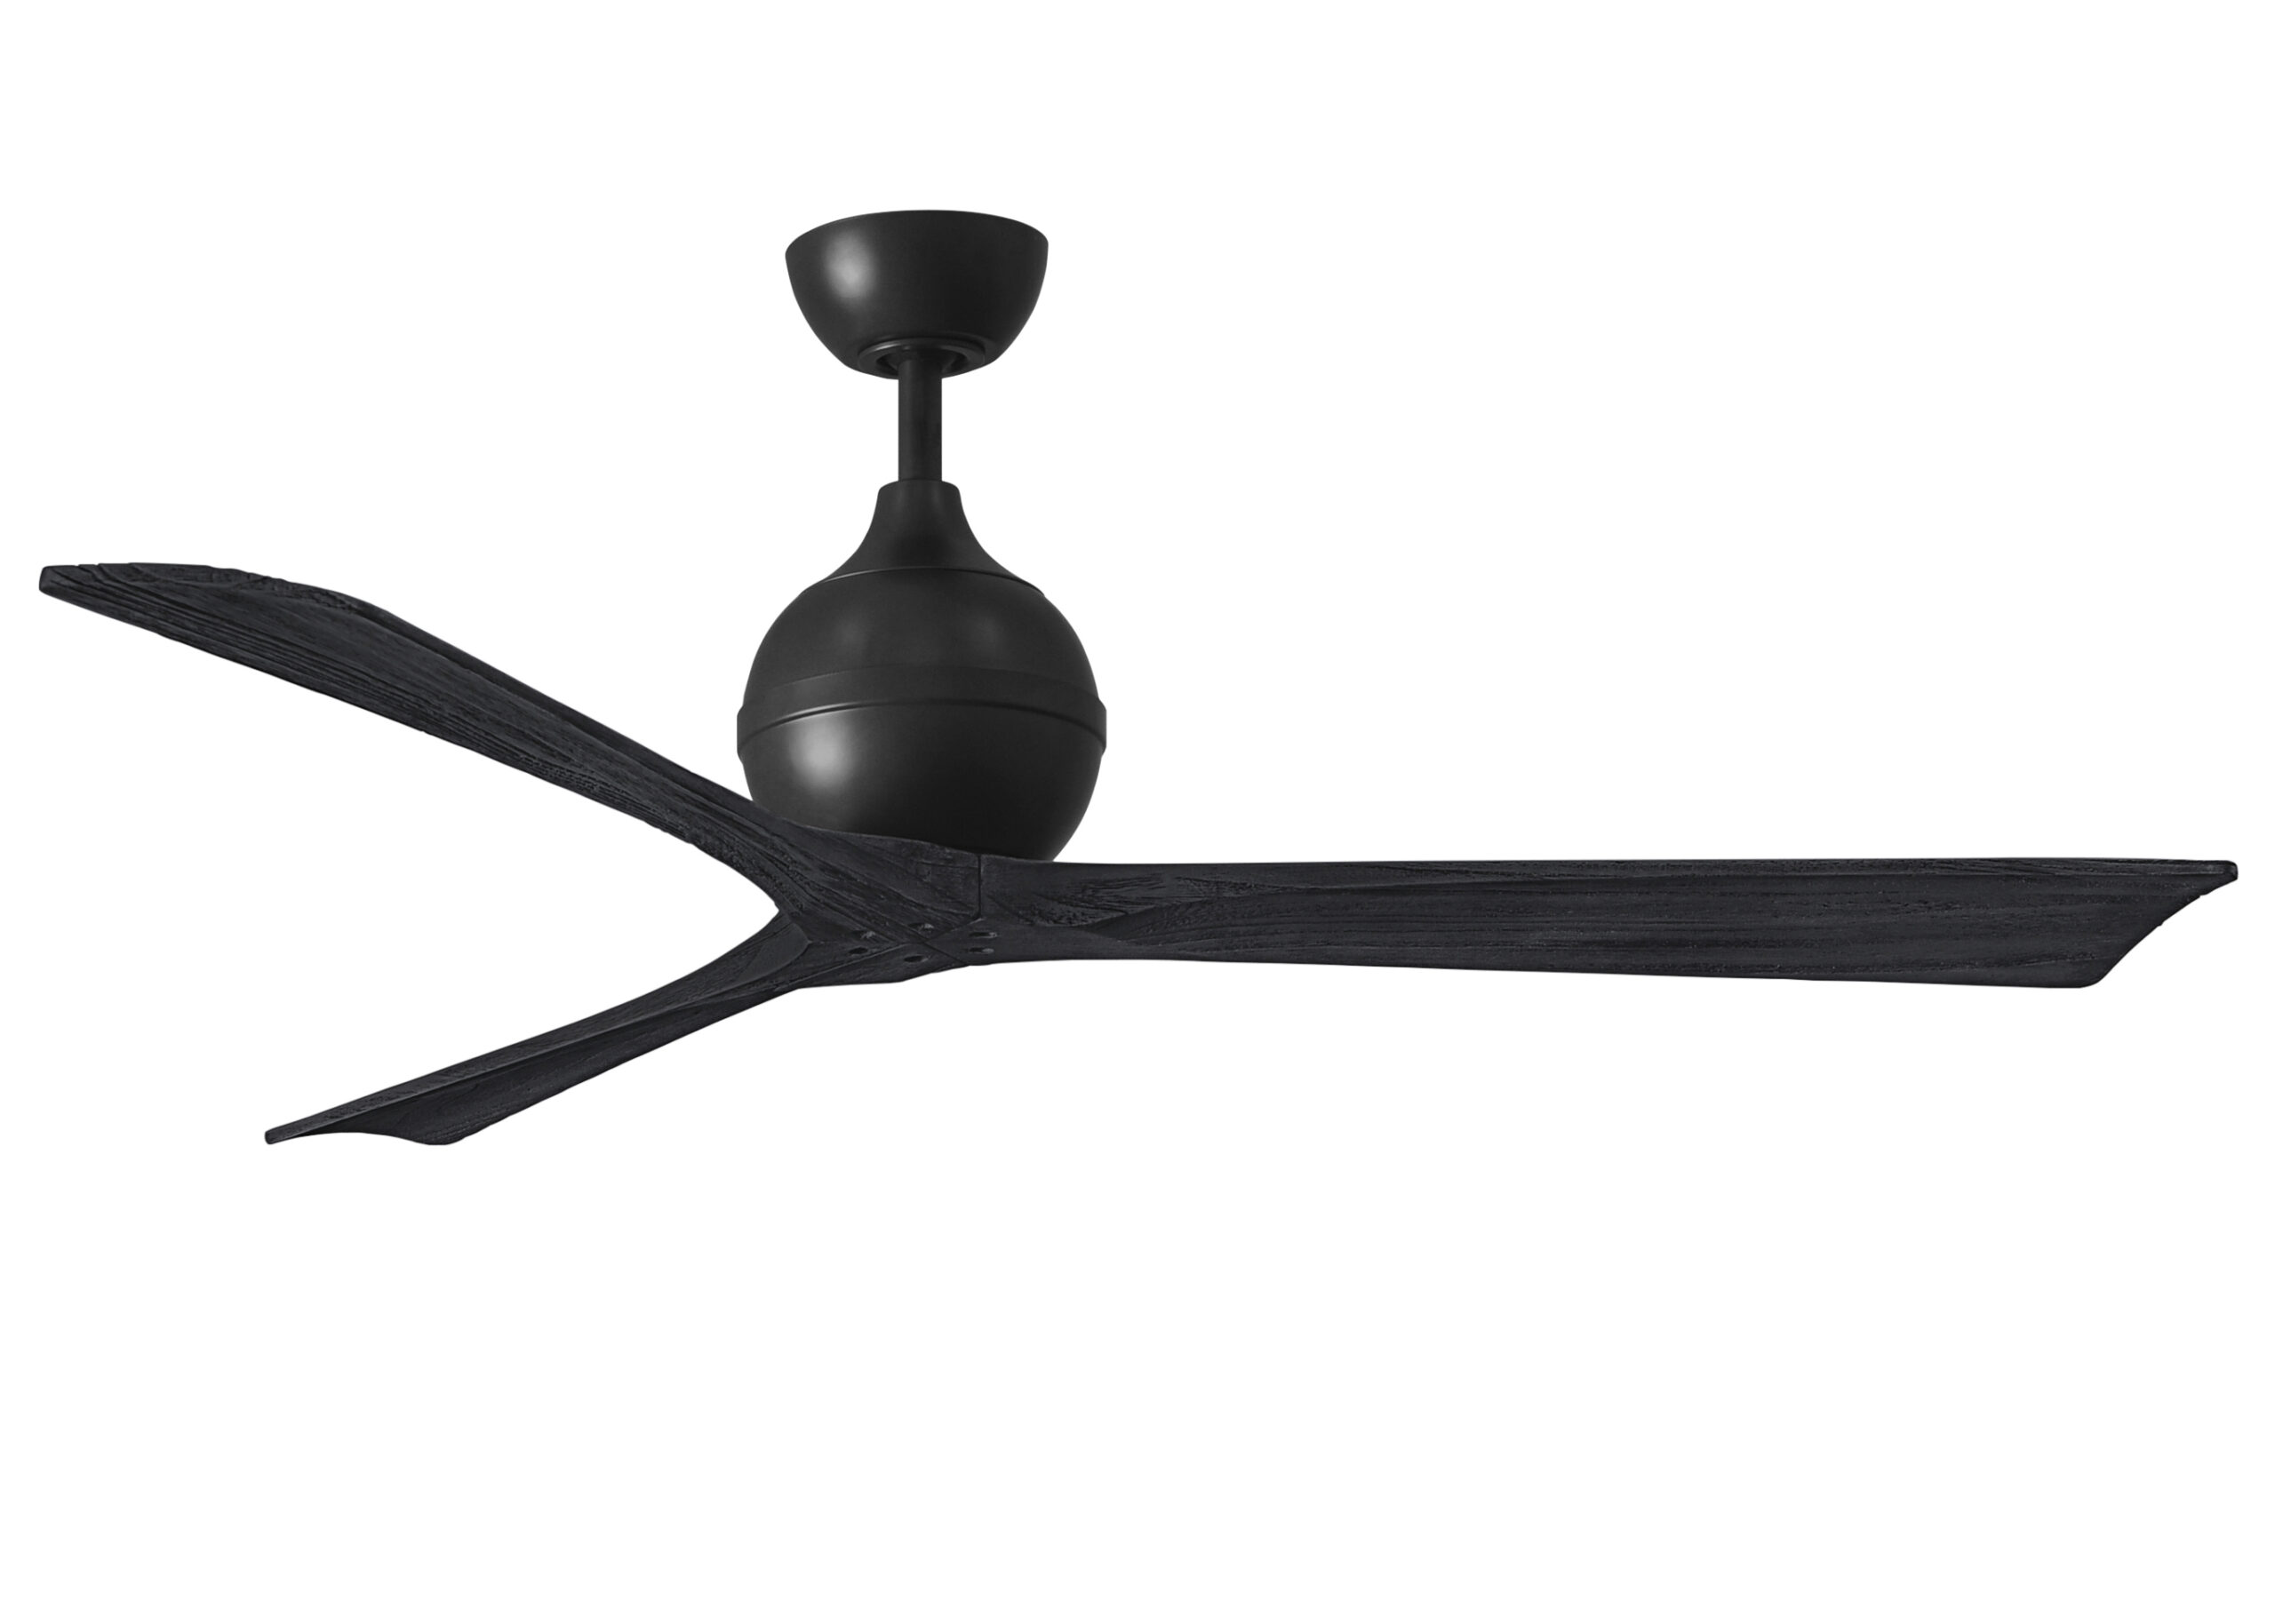 Irene-3 ceiling fan in matte black finish with 60